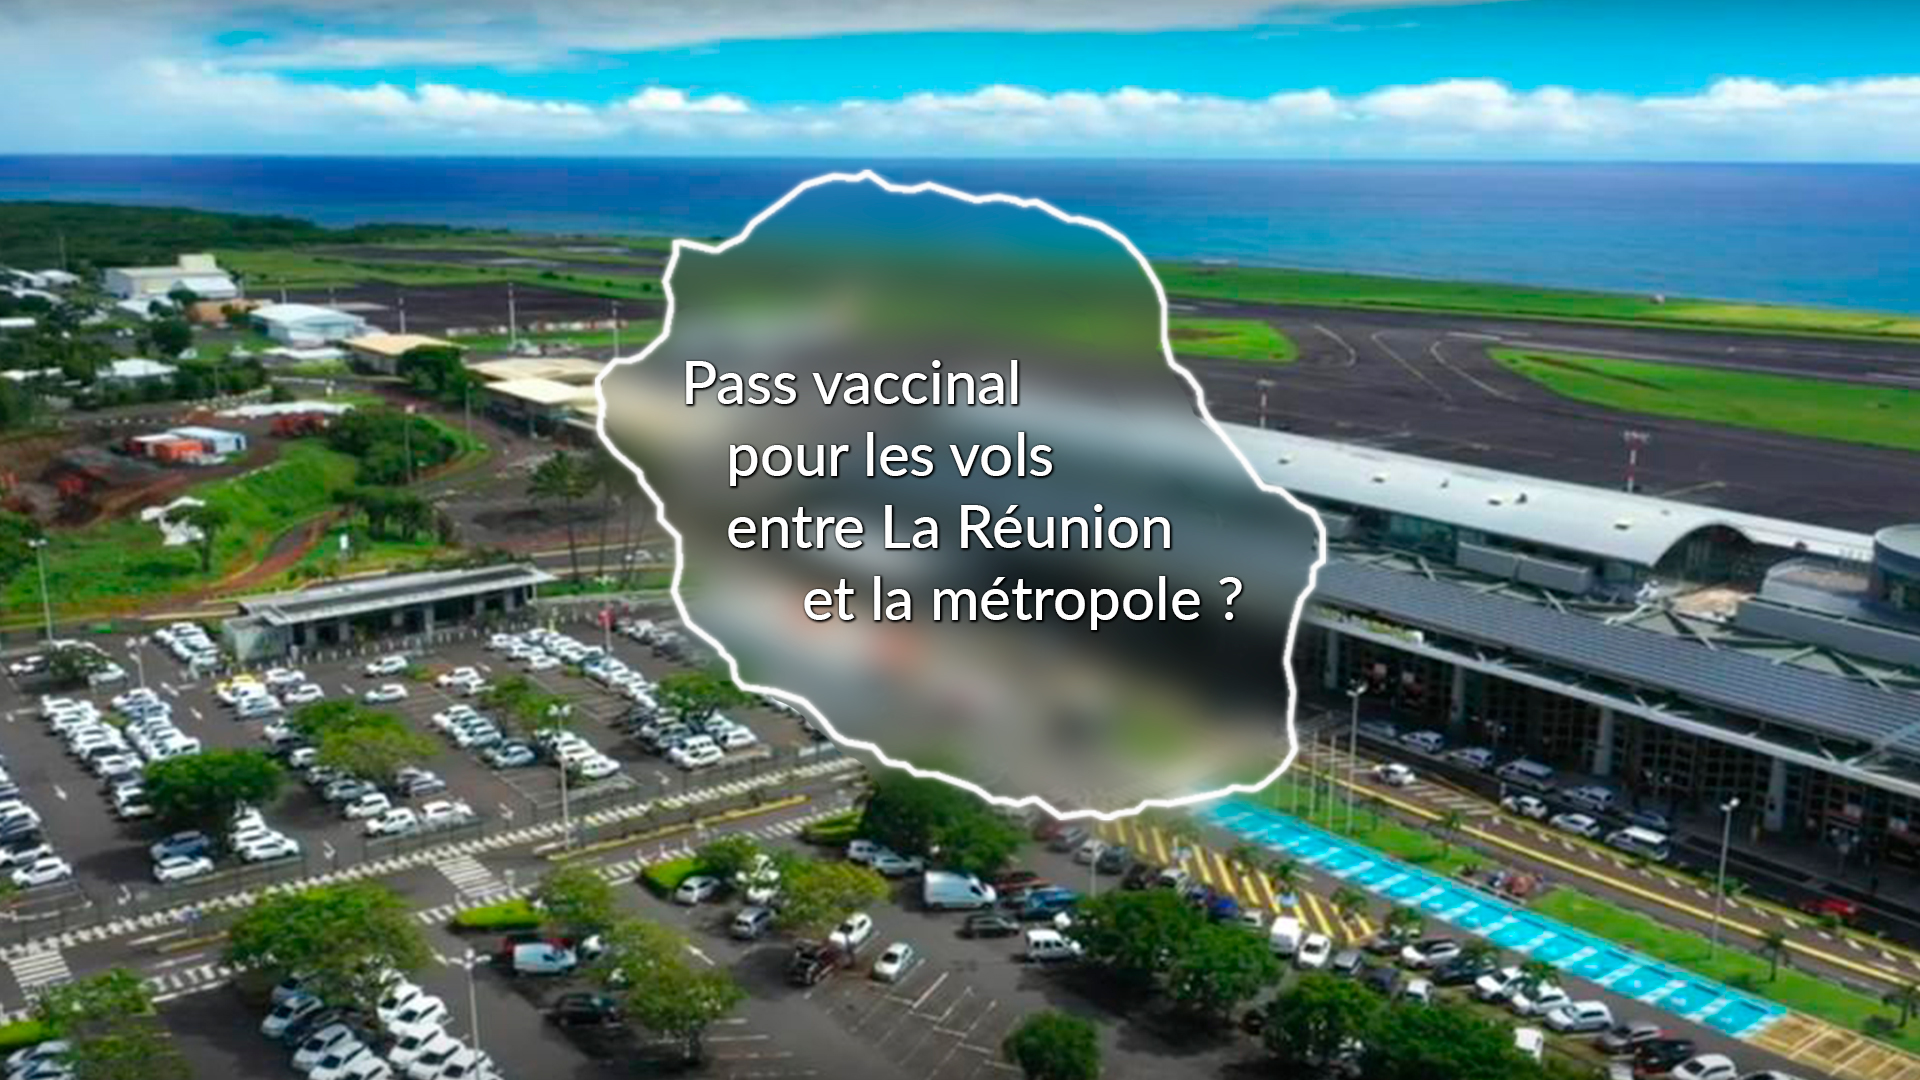 Le Pass vaccinal pourra être exigé pour les voyages entre La Réunion et la métropole